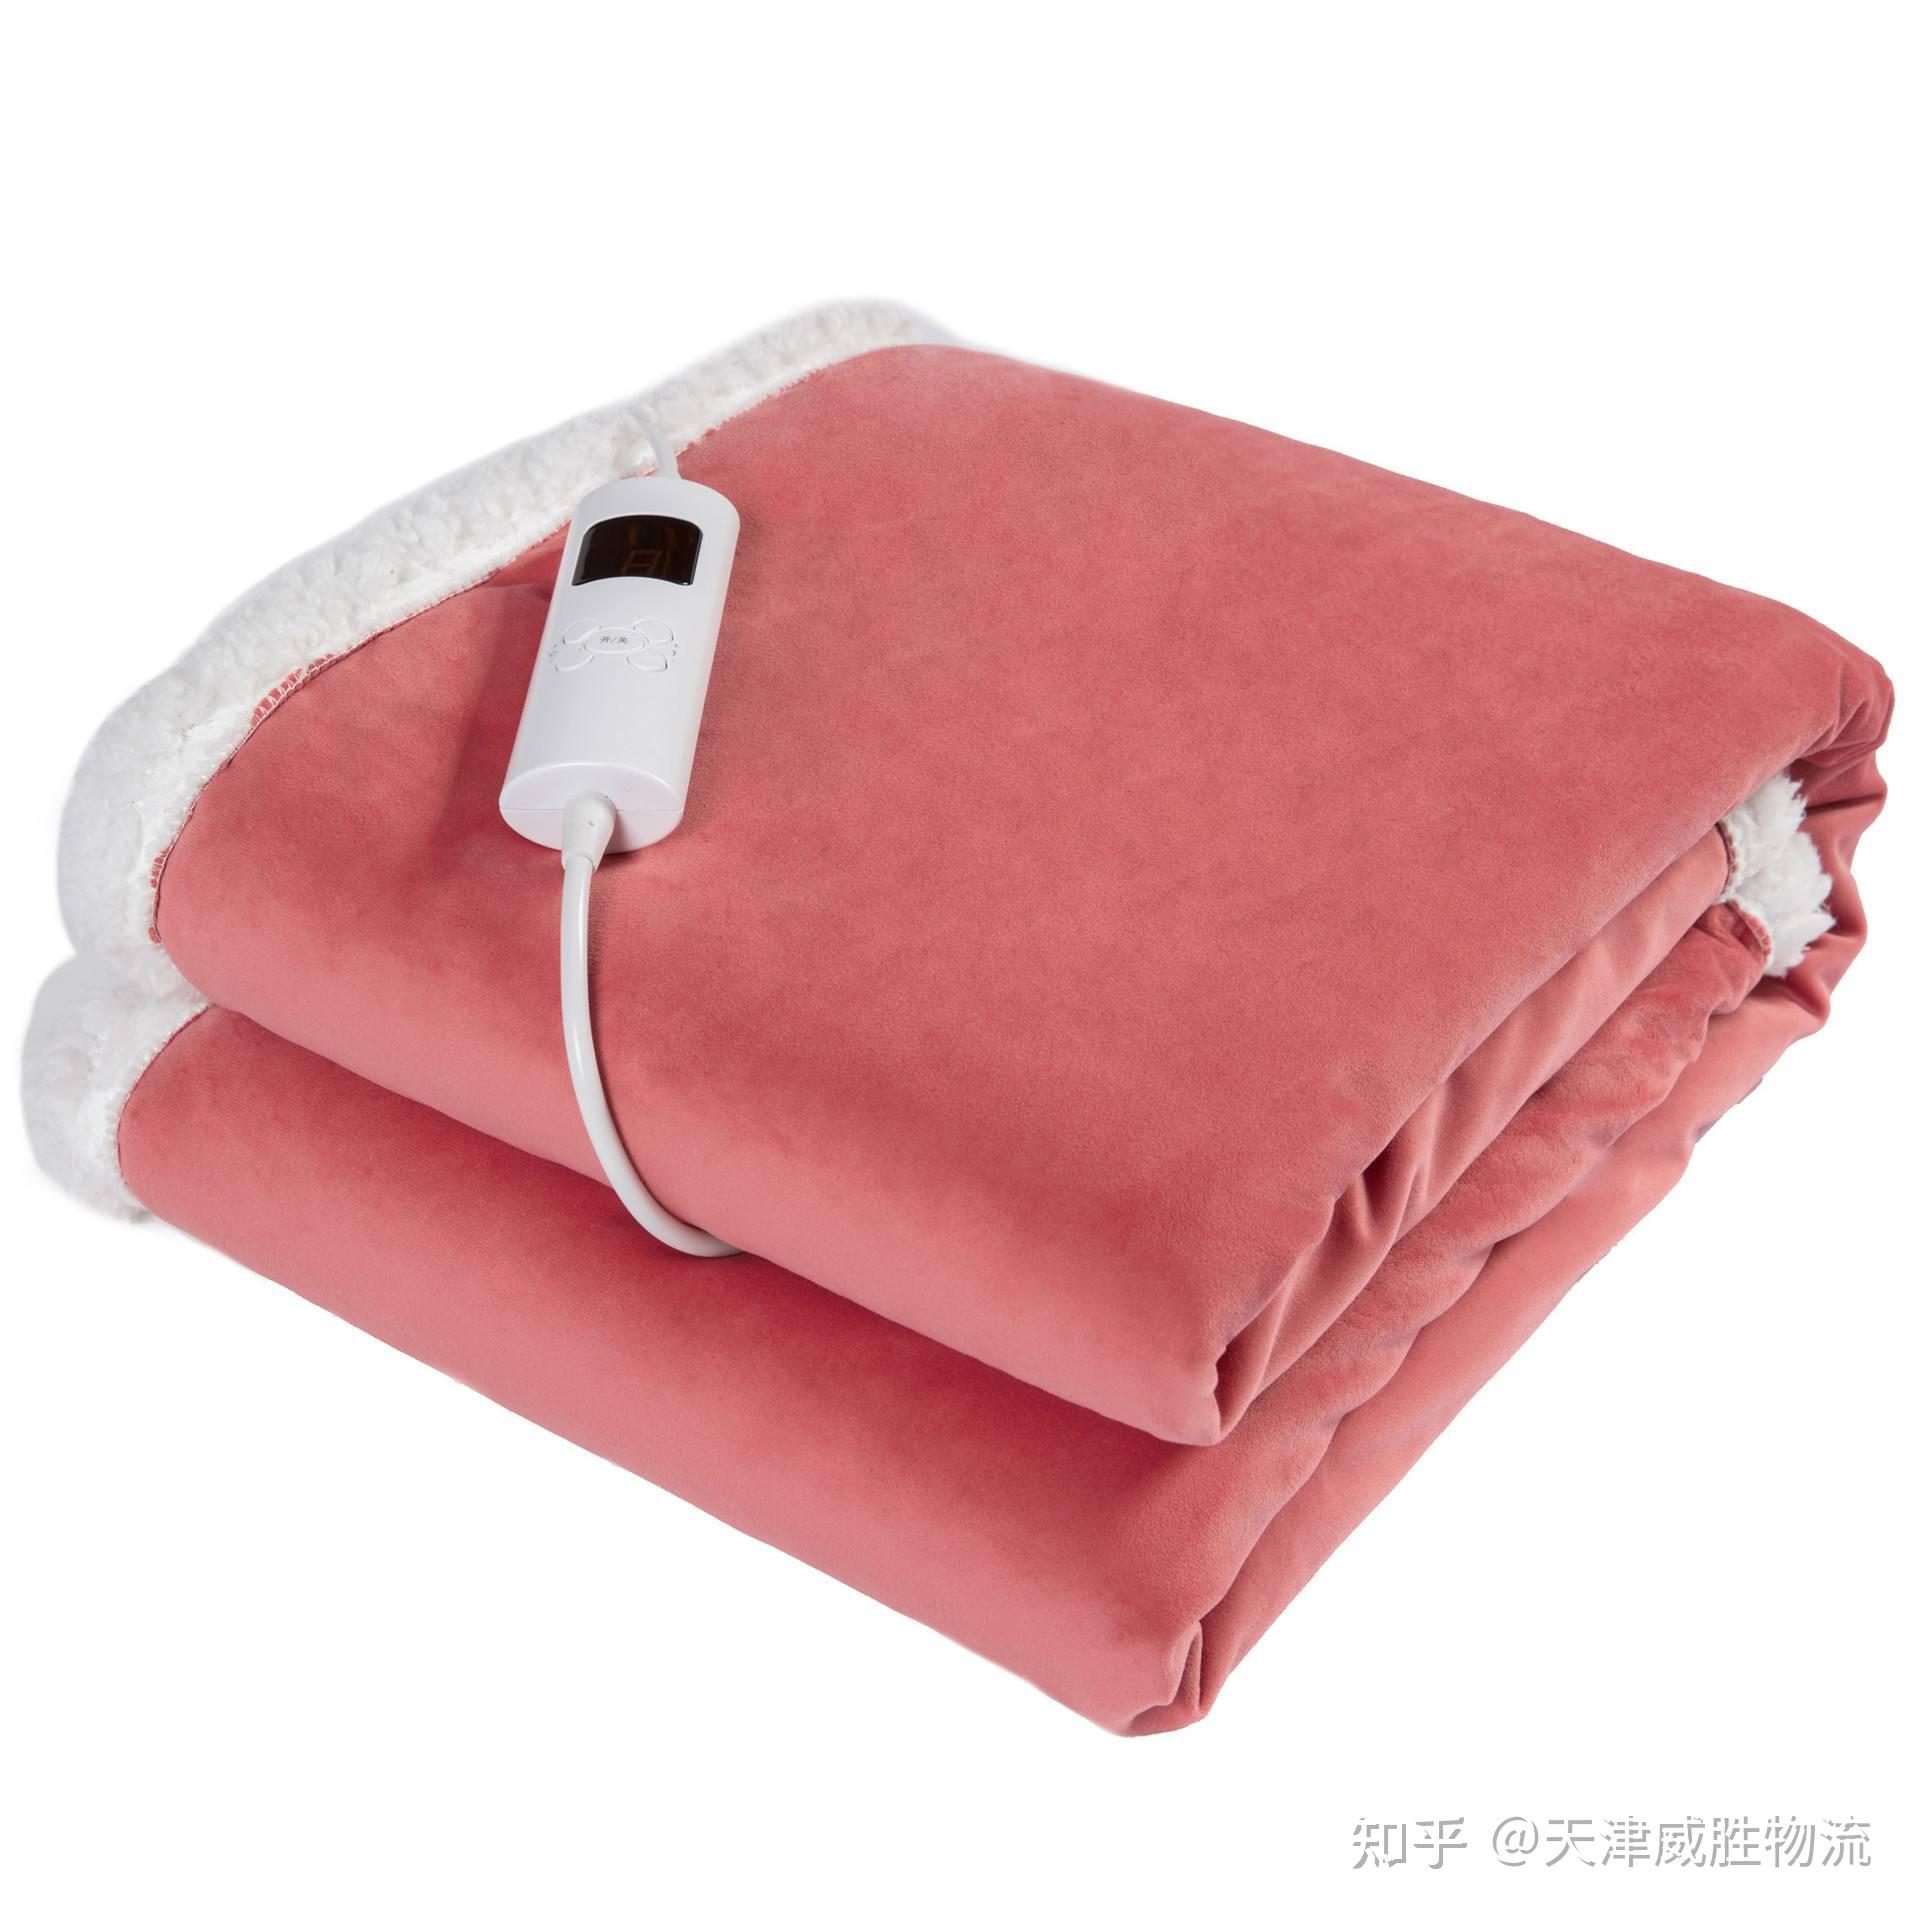 安悦康低压多功能远红外线热敷电加热护膝毯电热毯电褥子一件代发-阿里巴巴